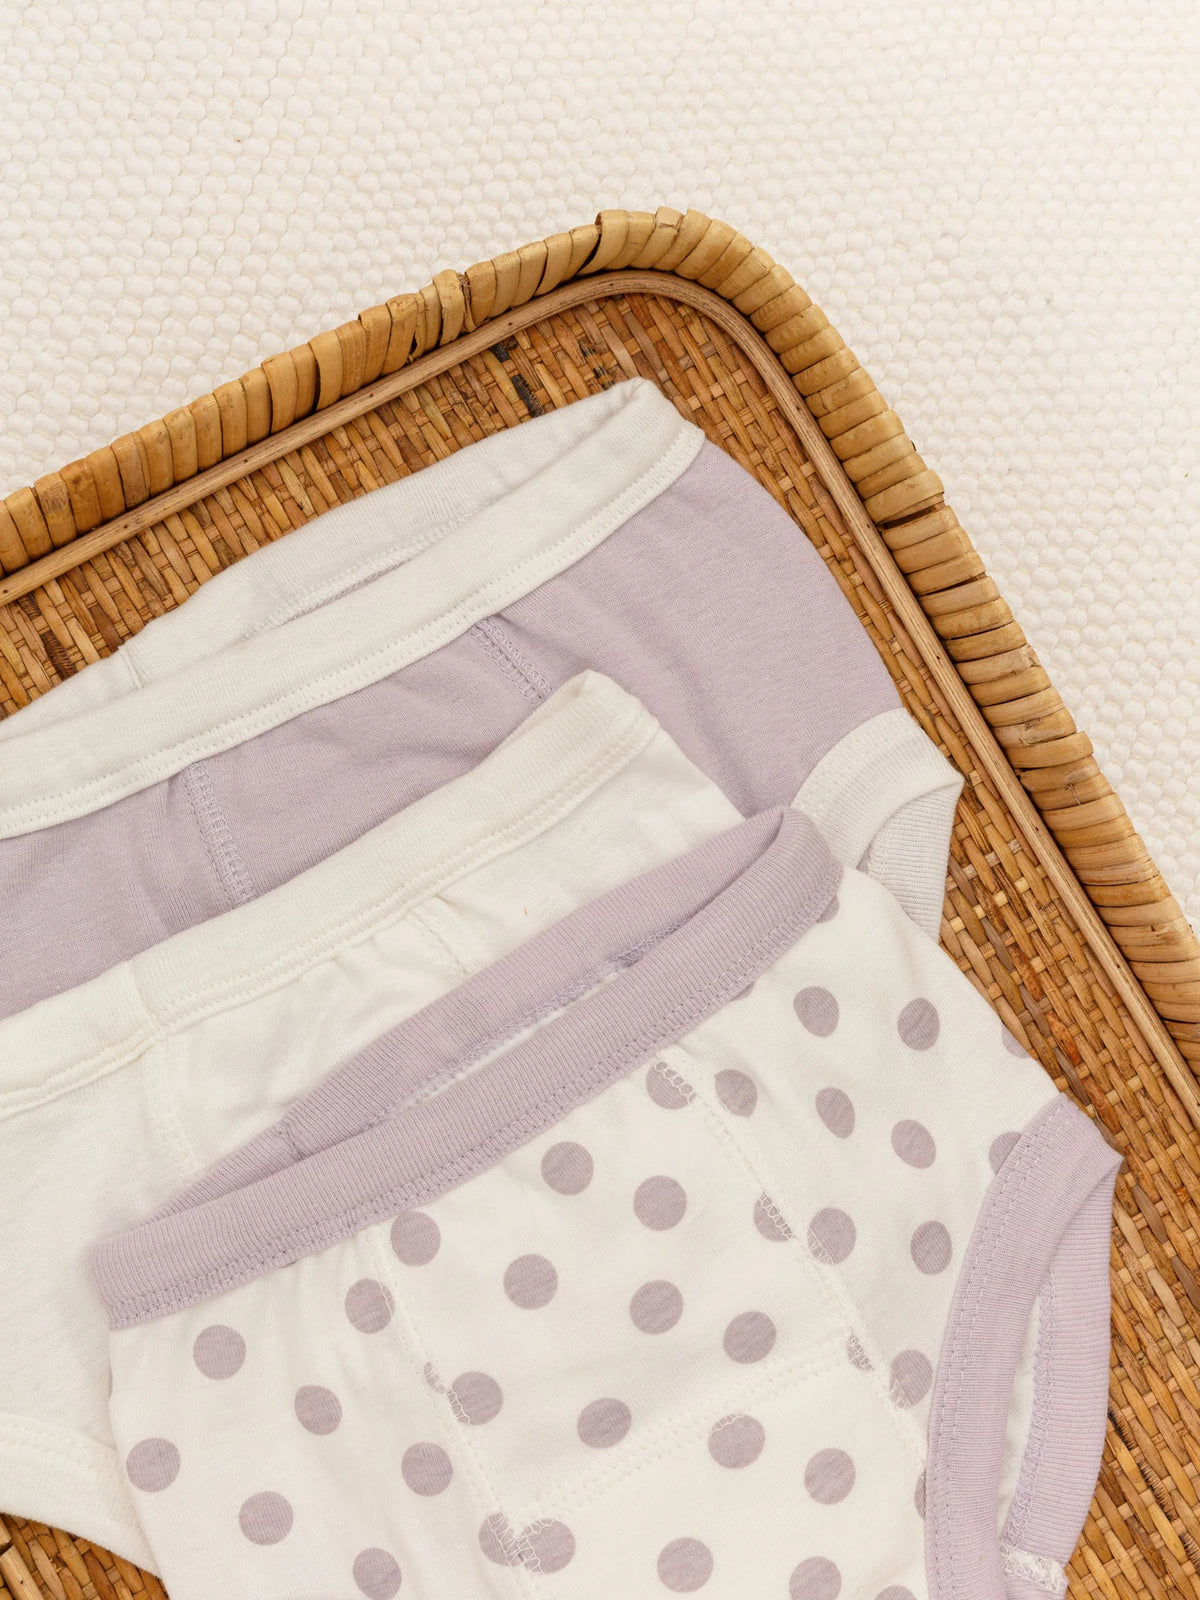 Cotton Baby Potty Training Underwear - Sea Green Stripe – Under